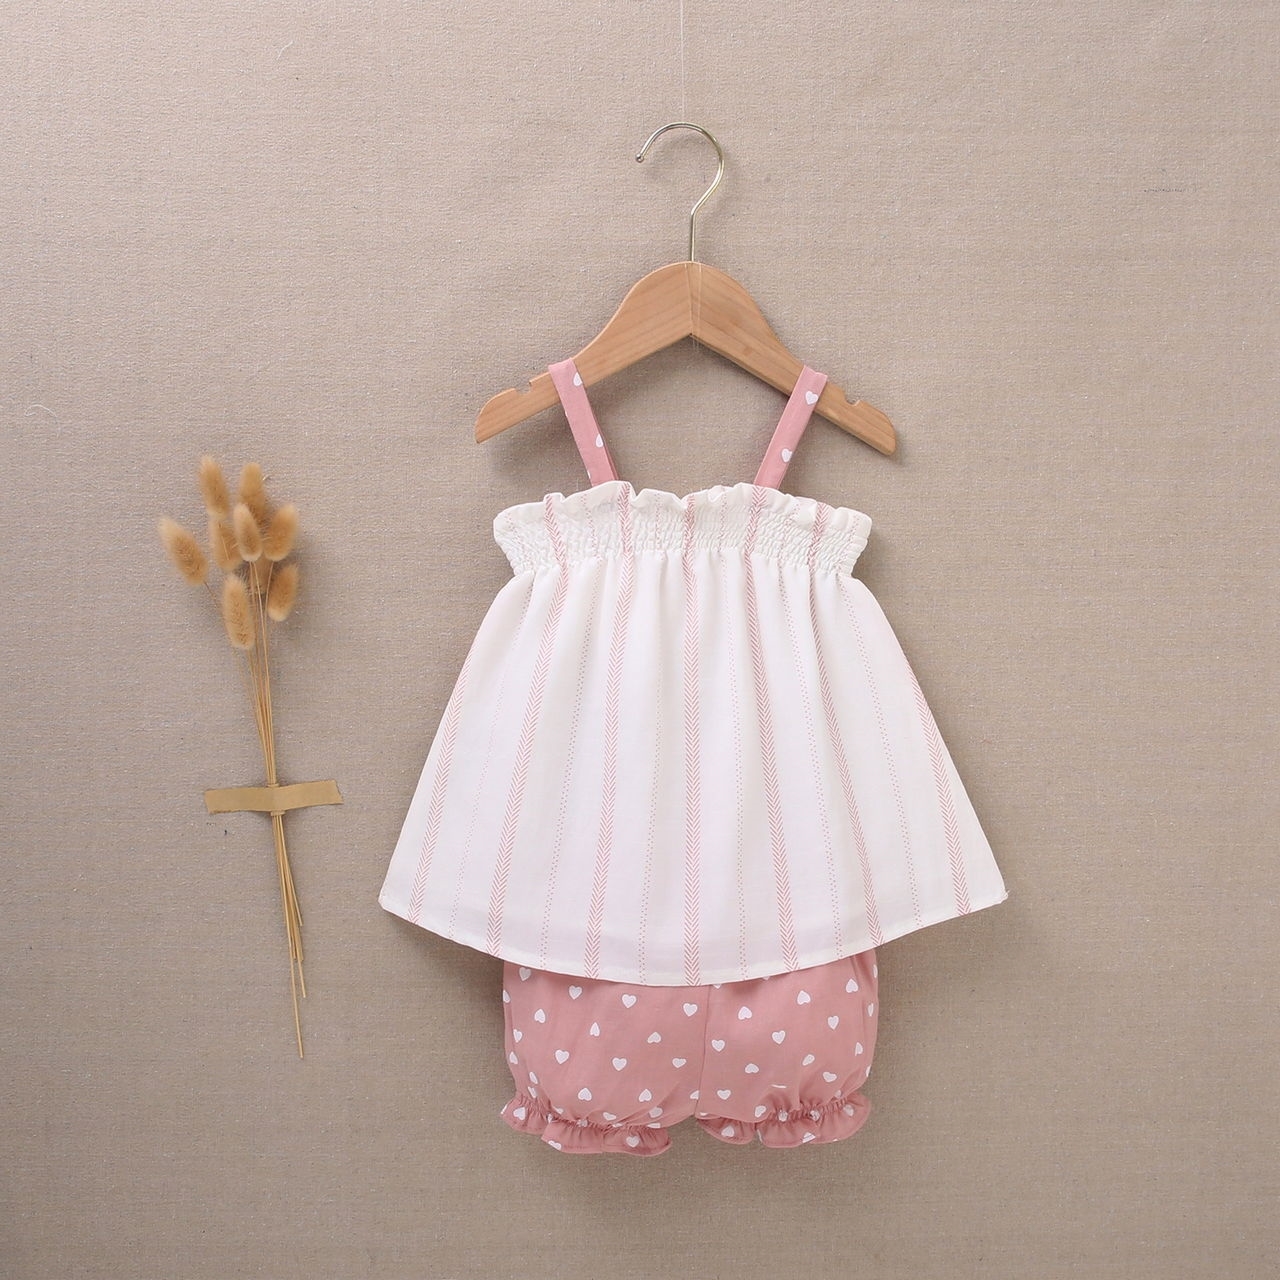 Imagen de Vestido de bebé niña con cubrepañal blanco con estampado en tonos rosas y combinado con rosa y corazones blancos